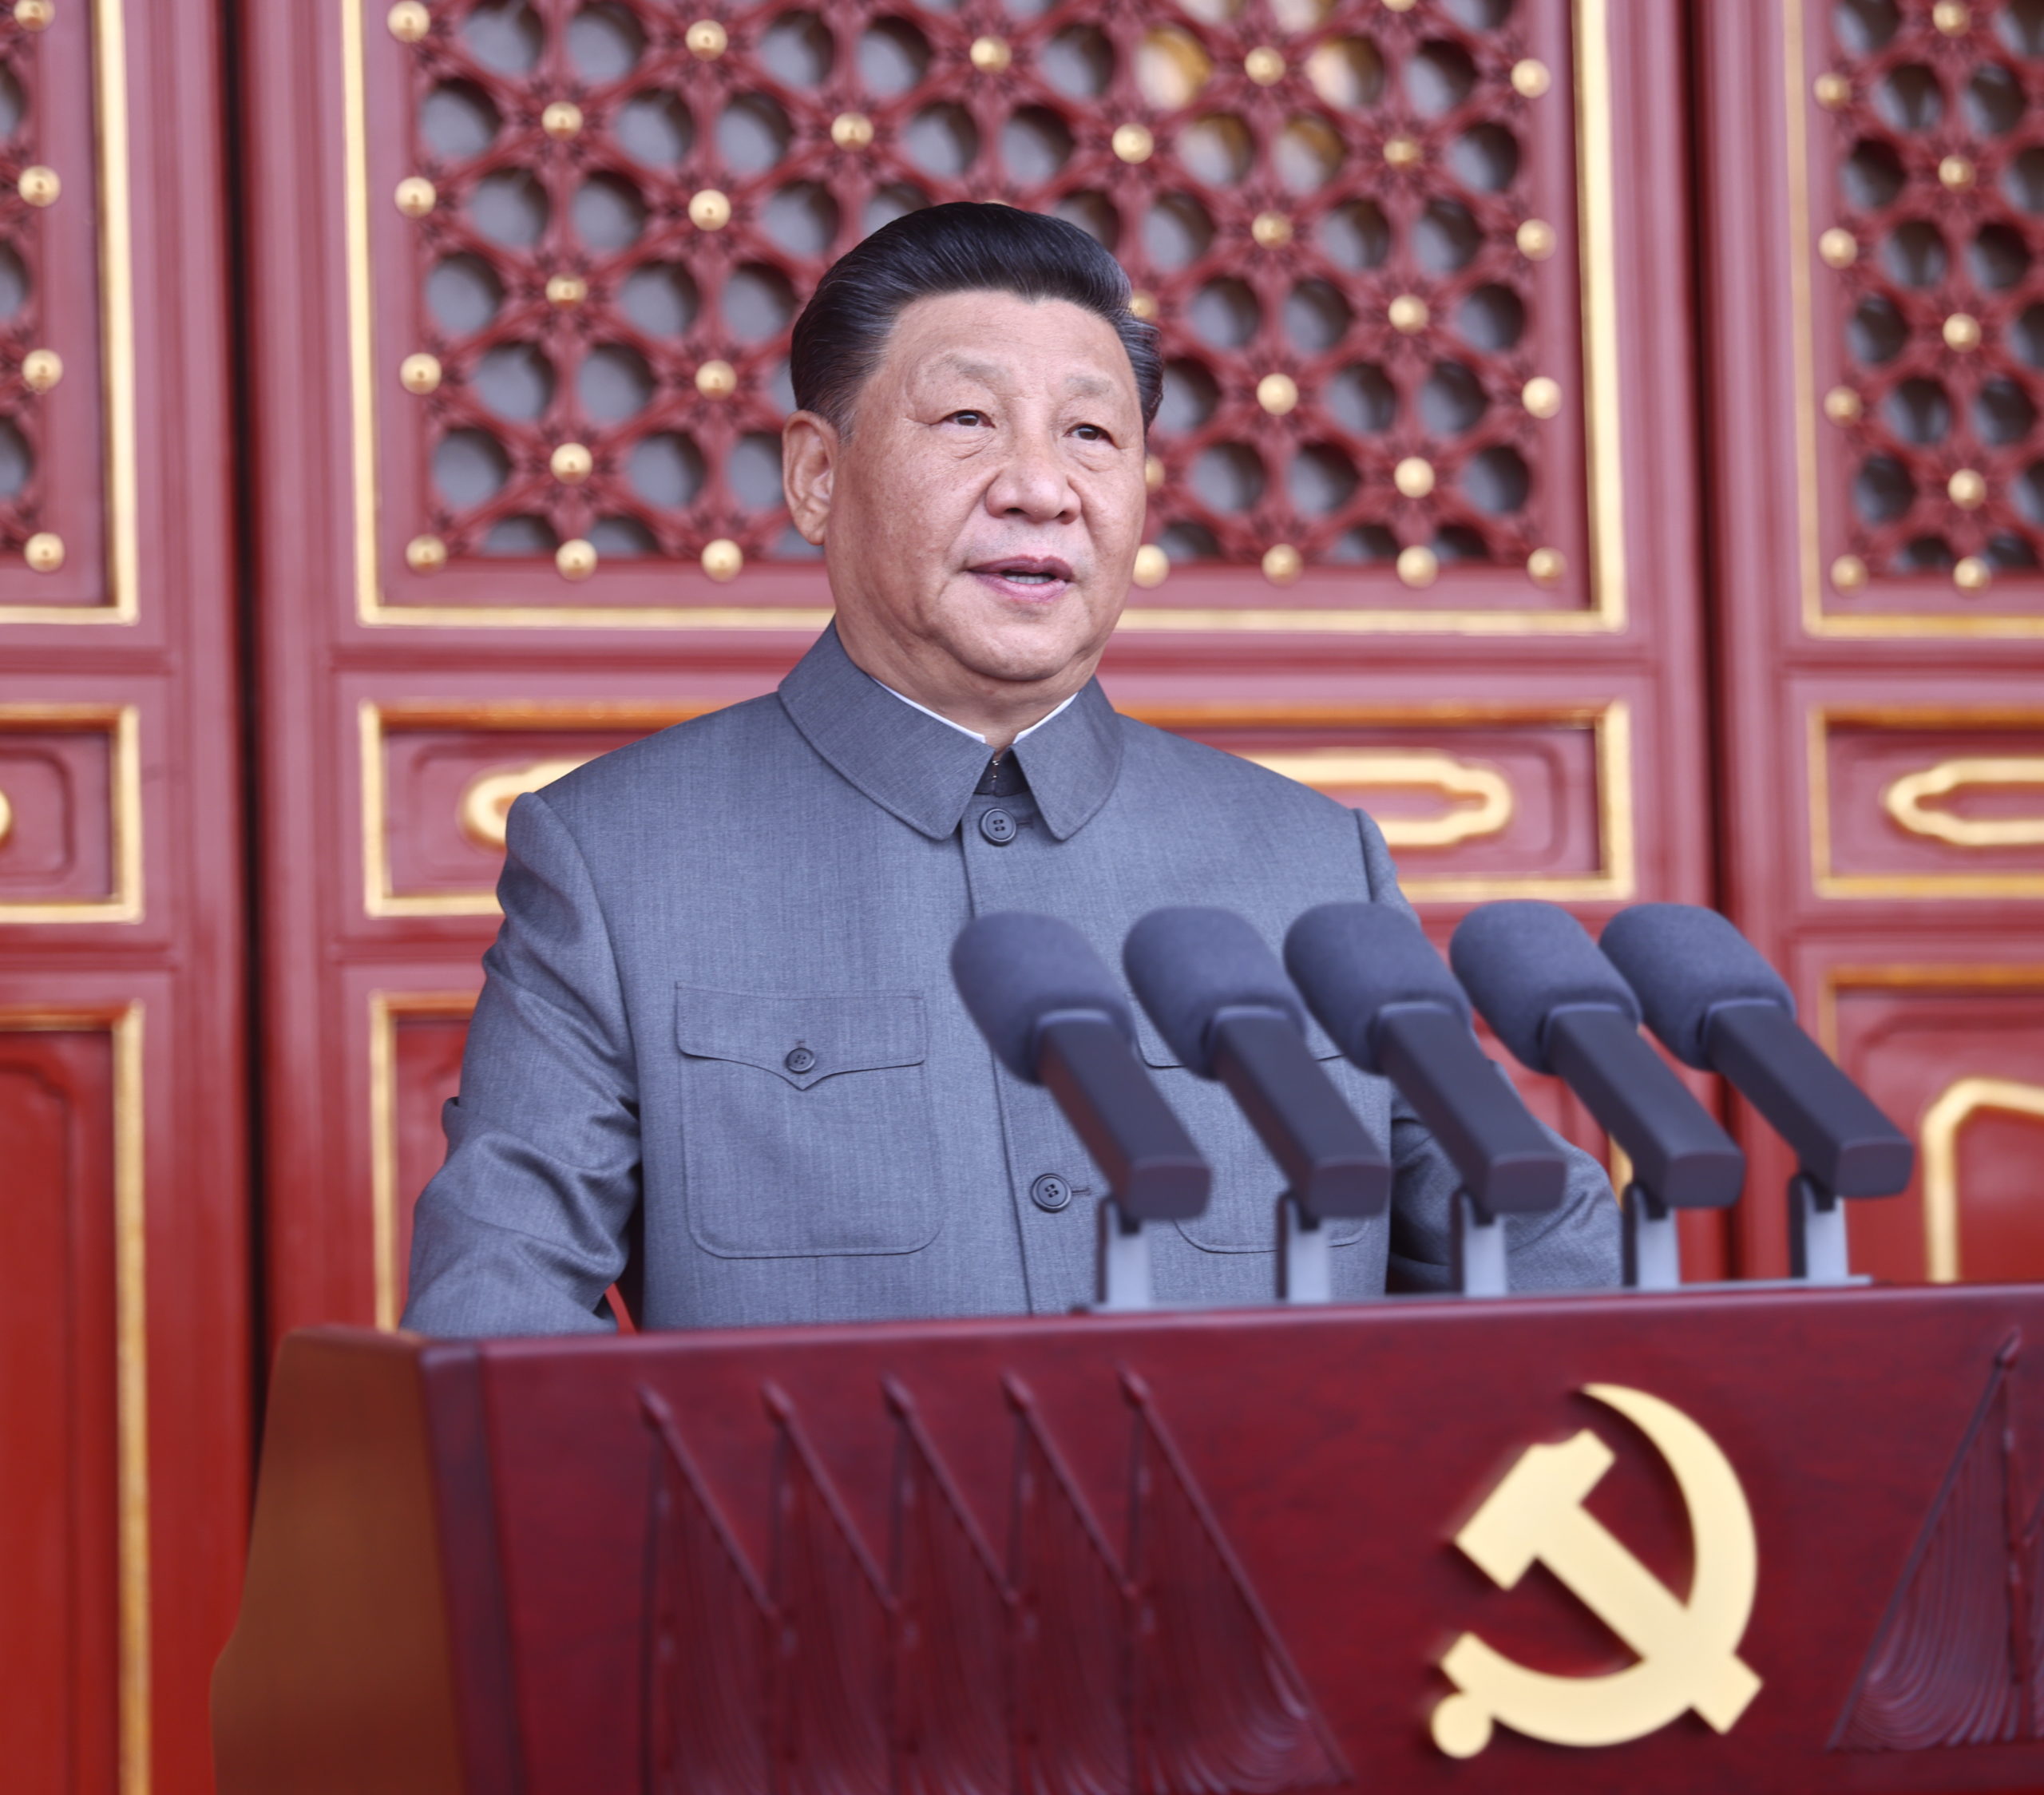 XX Congresso do PCC | Xi Jinping apresenta discurso optimista e voltado para o futuro